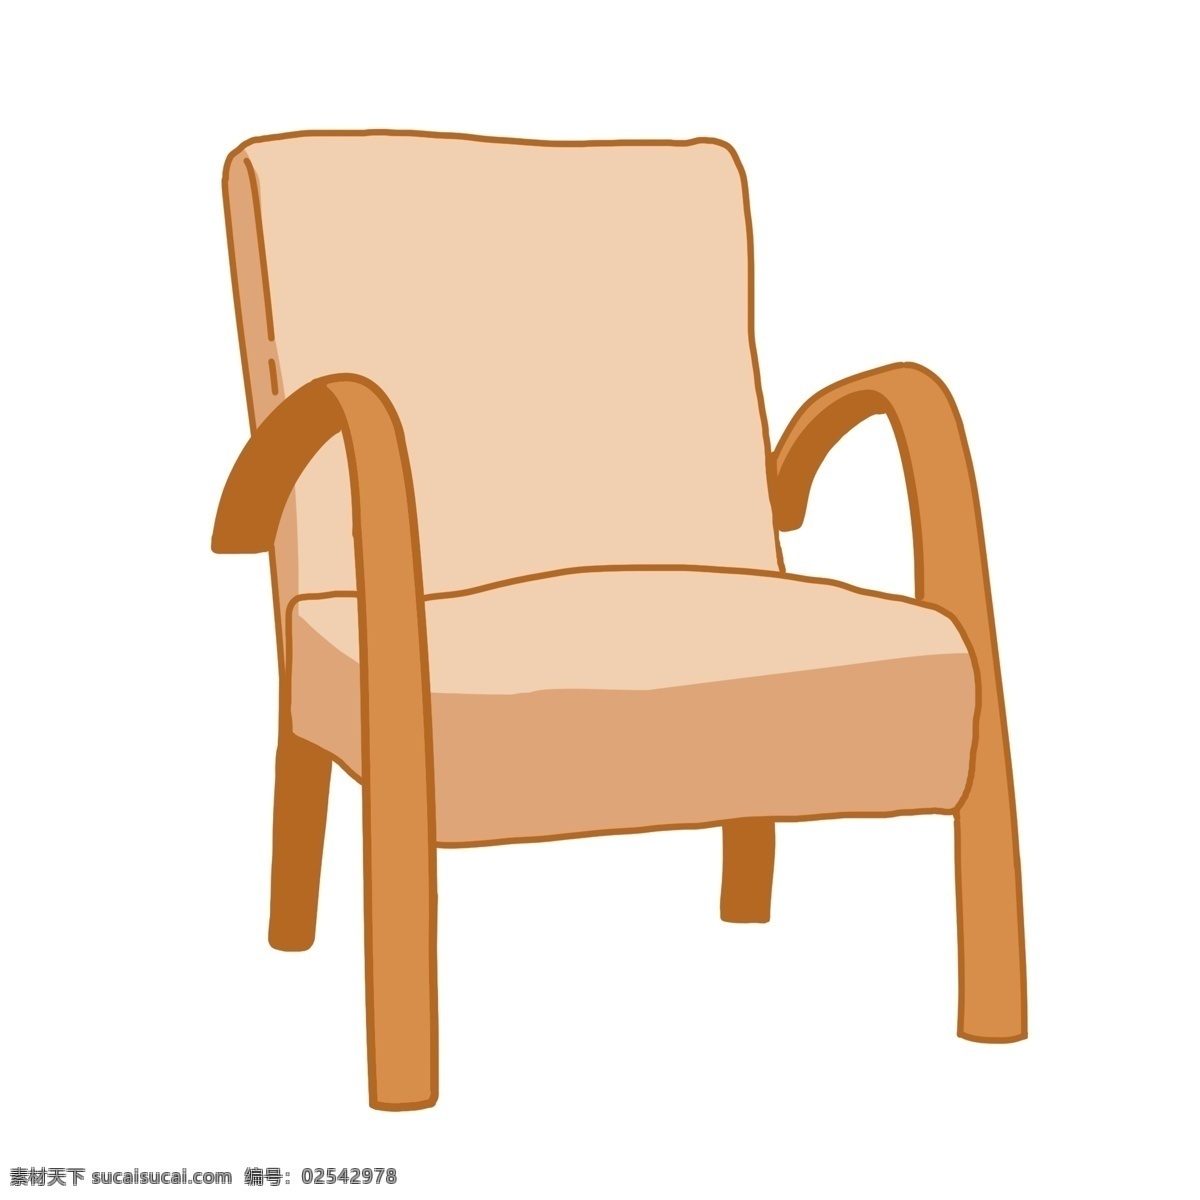 家具 沙发 卡通 插画 椅子